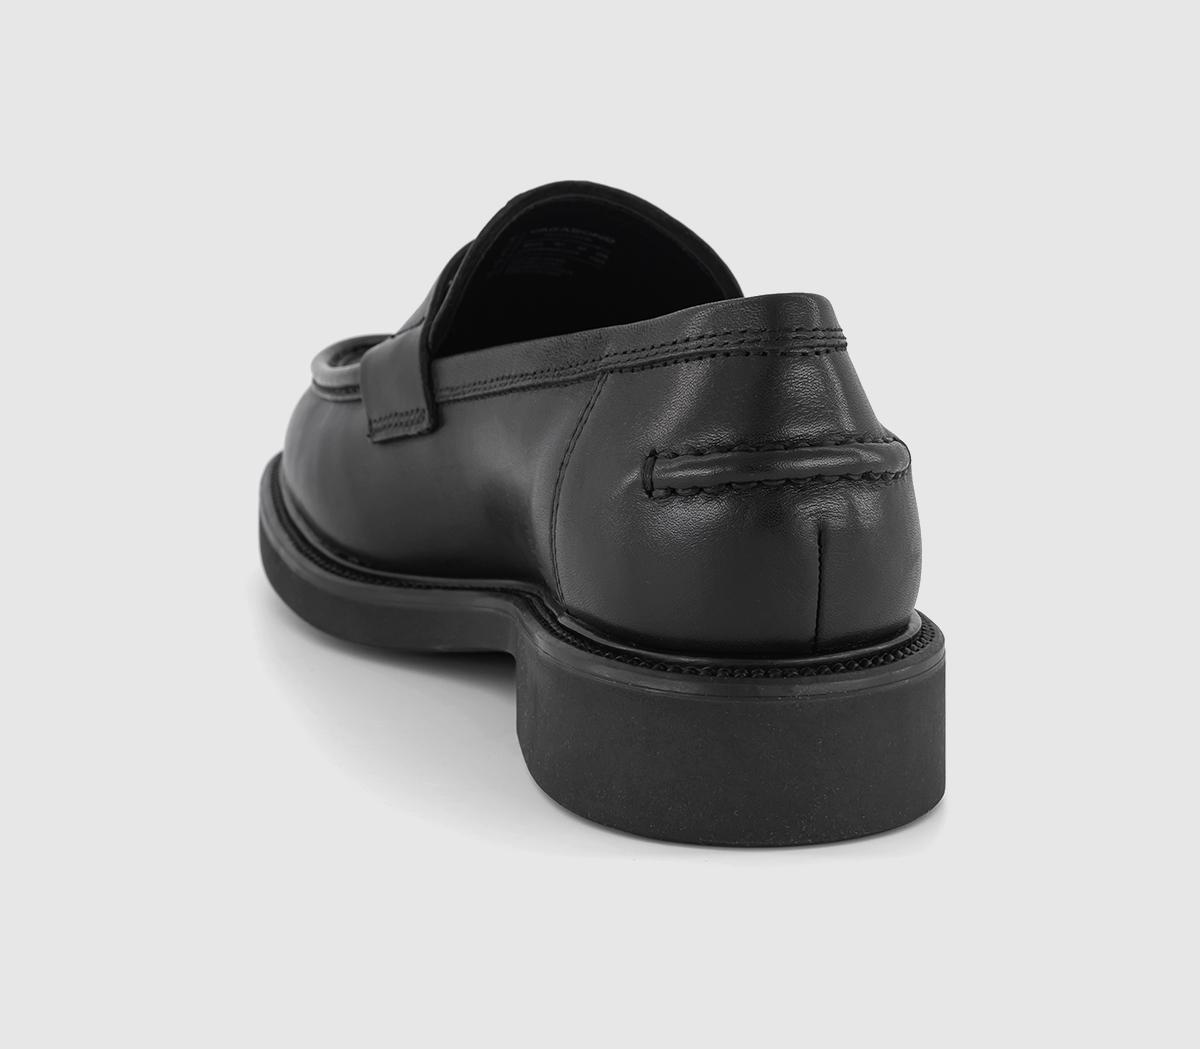 Vagabond Shoemakers Alex Loafers Black - Men’s Smart Shoes